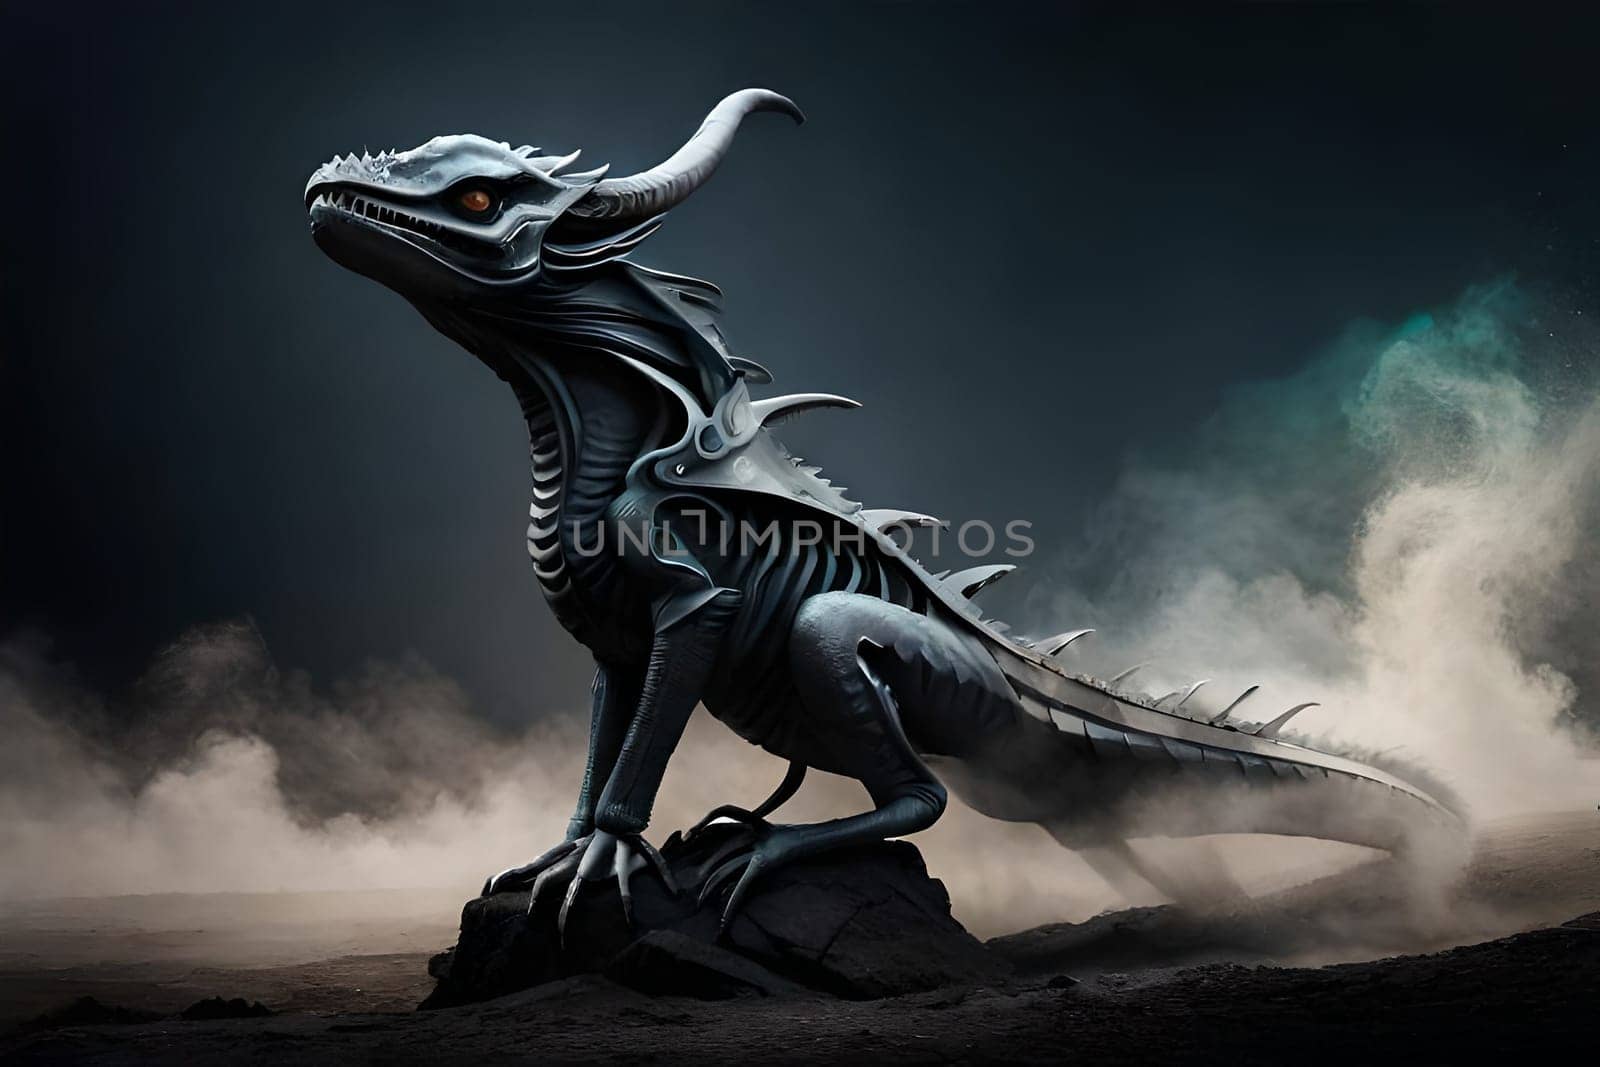 Fantasy evil dragon portrait. Surreal artwork of danger dragon from medieval mythology by milastokerpro